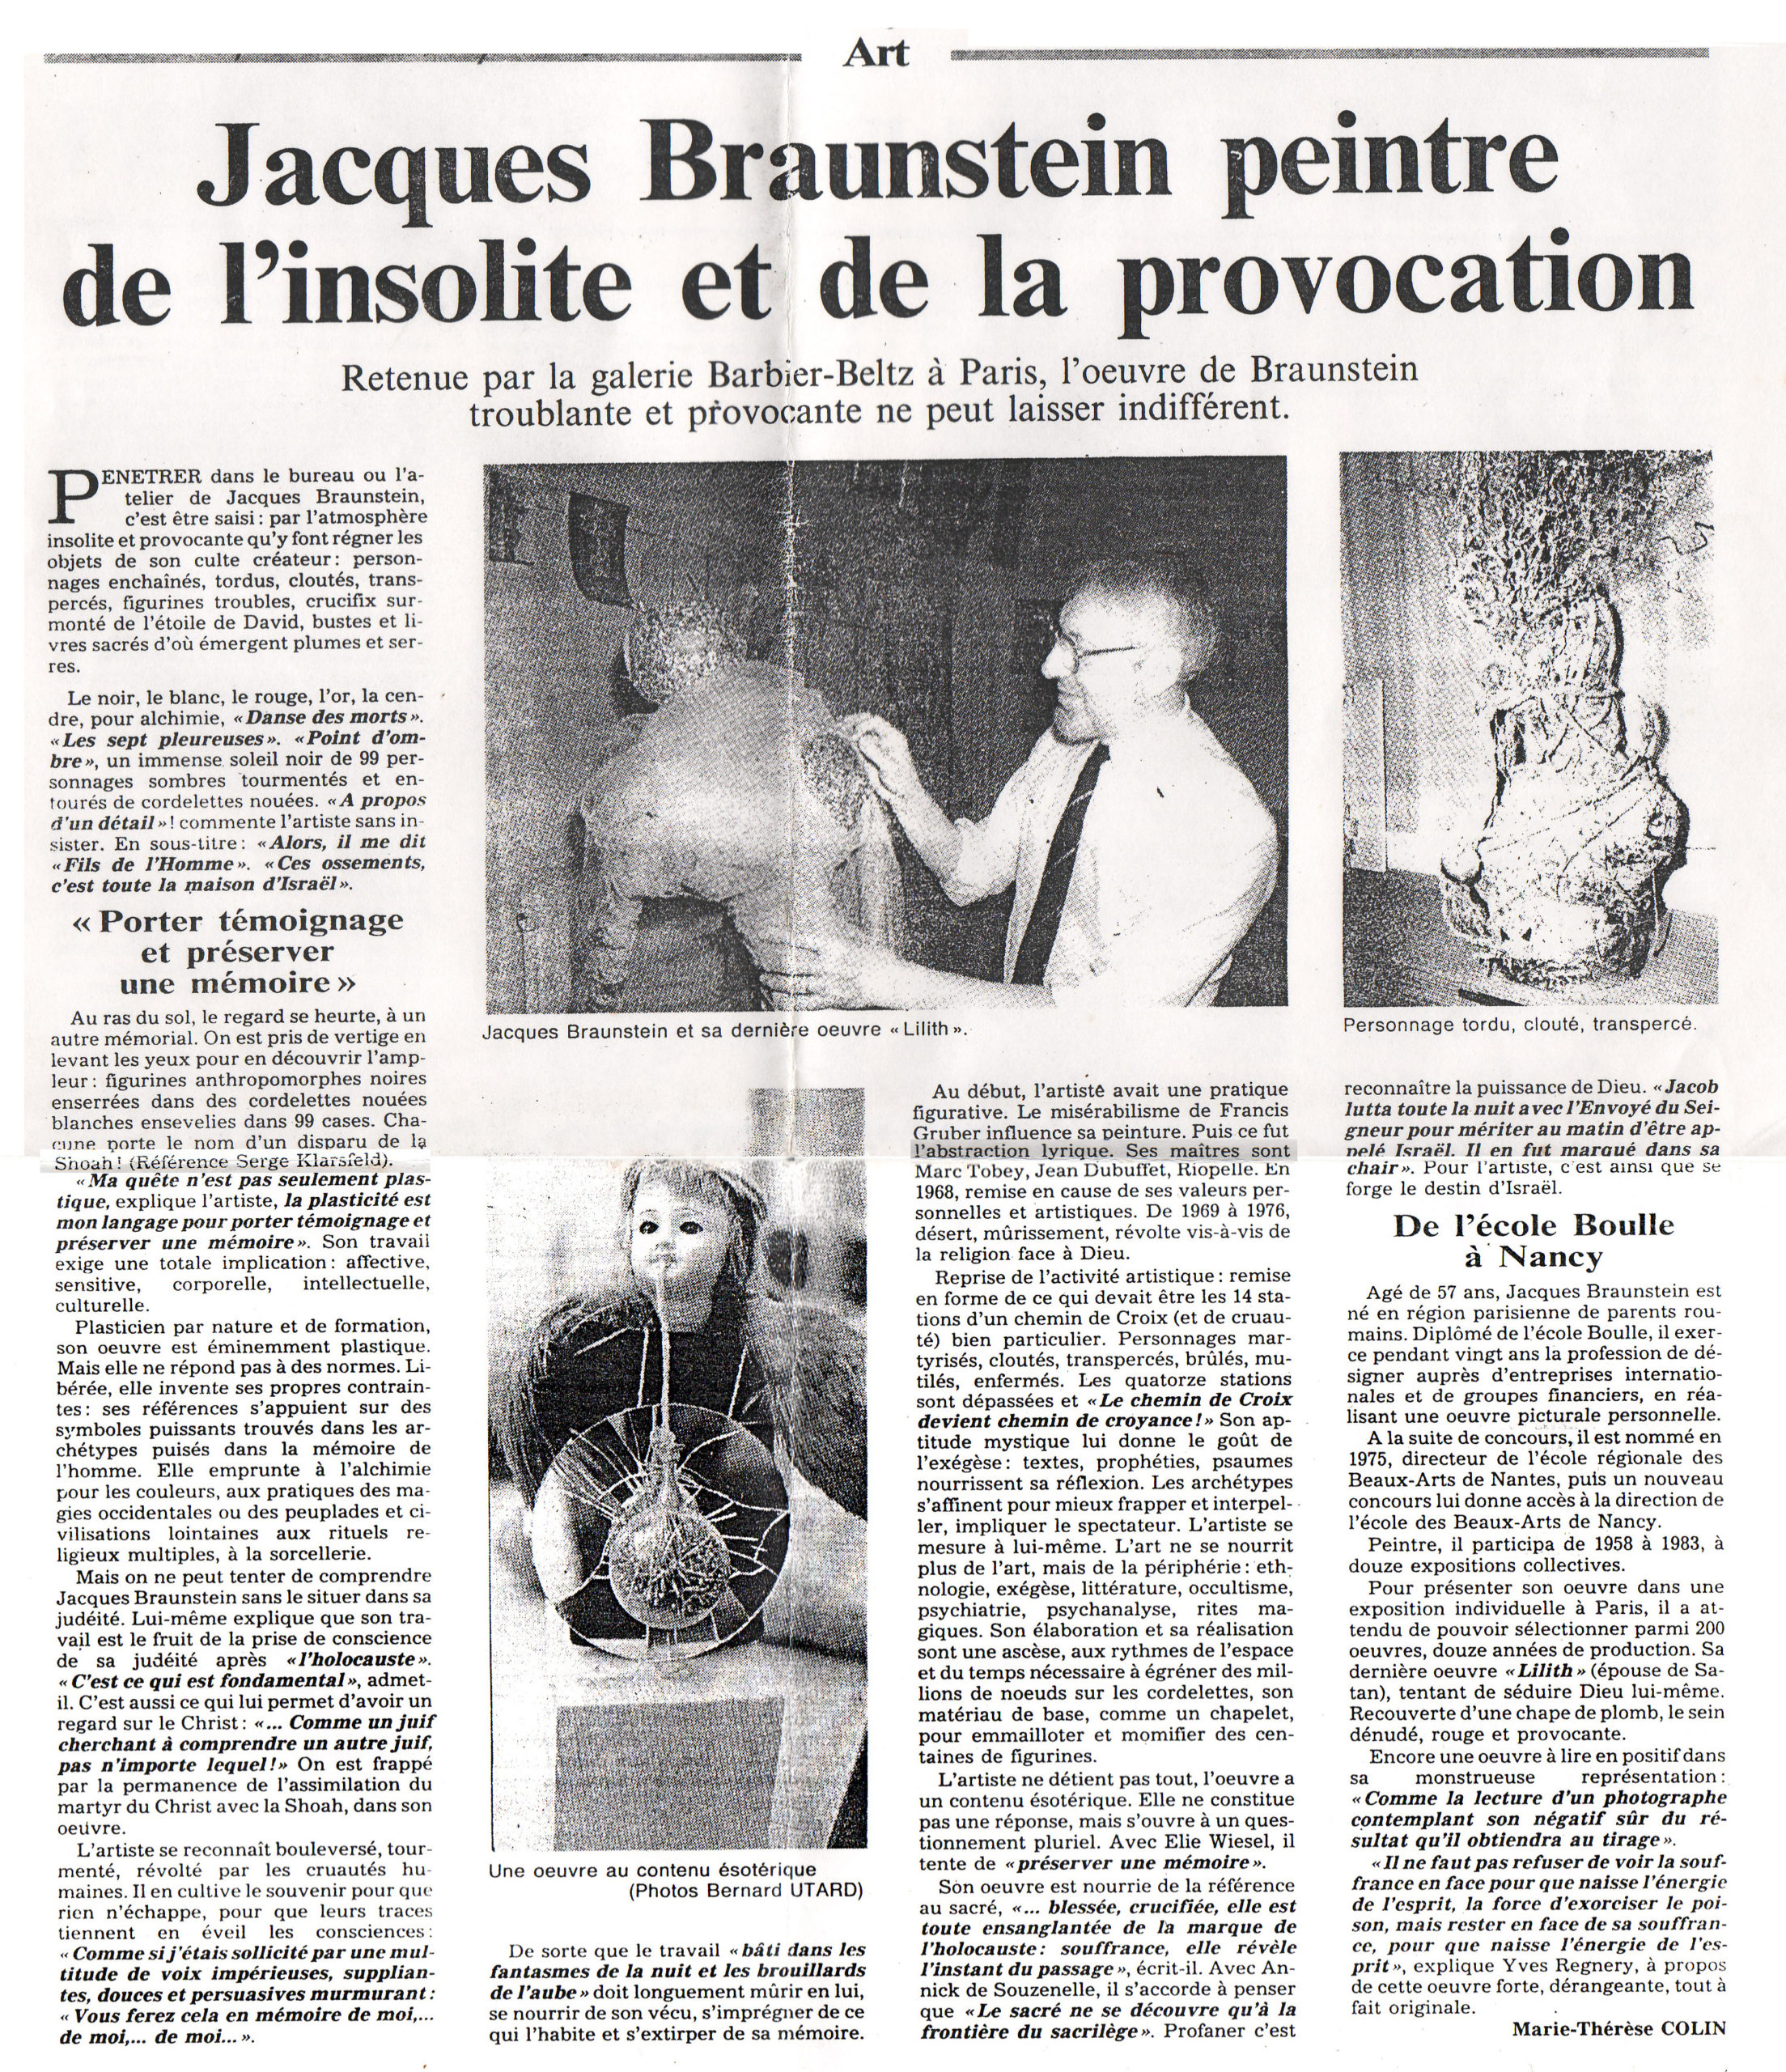 Revue de Presse - Marie-Thérèse Colin - Janvier 1989 - L'Est Républicain